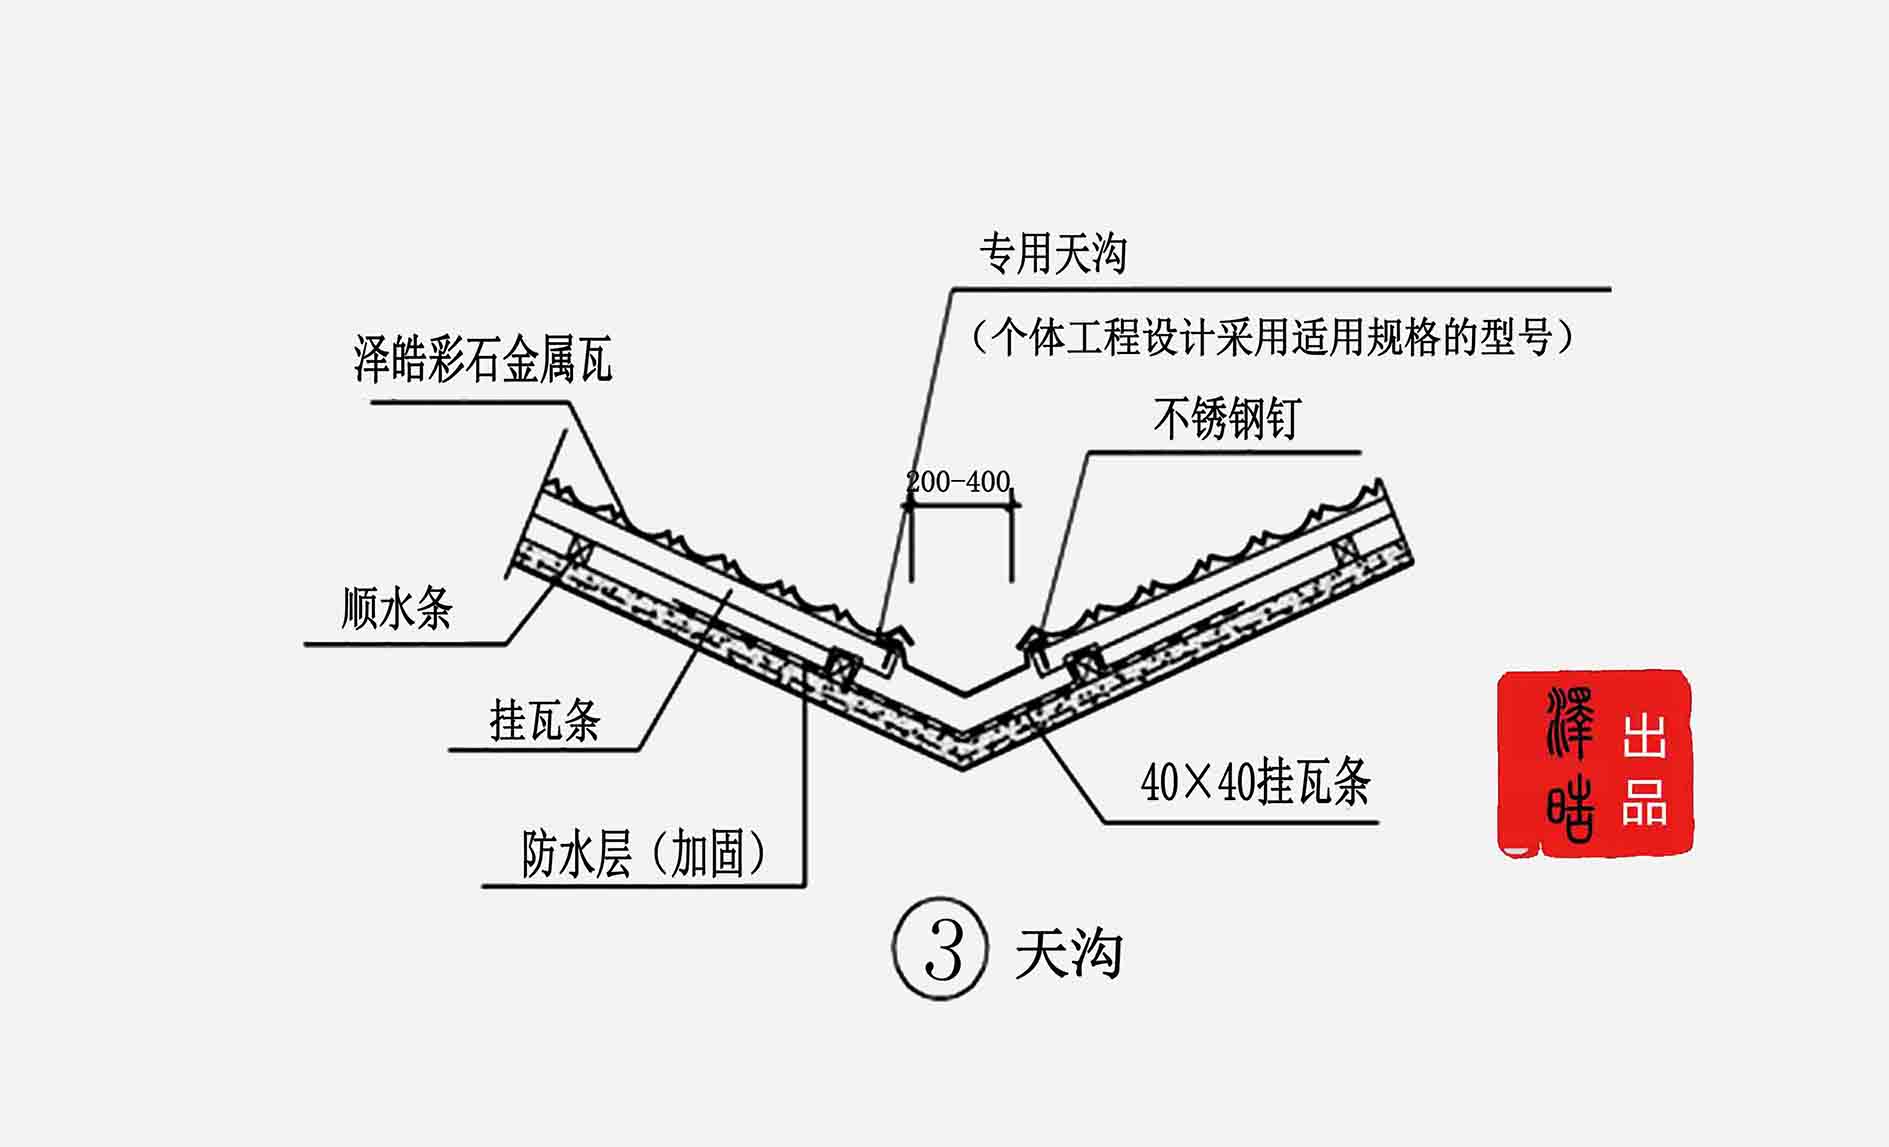 花园 浙江杭州-新南湖绿苑项目  (2) 混凝土屋面天沟采用防水卷材时